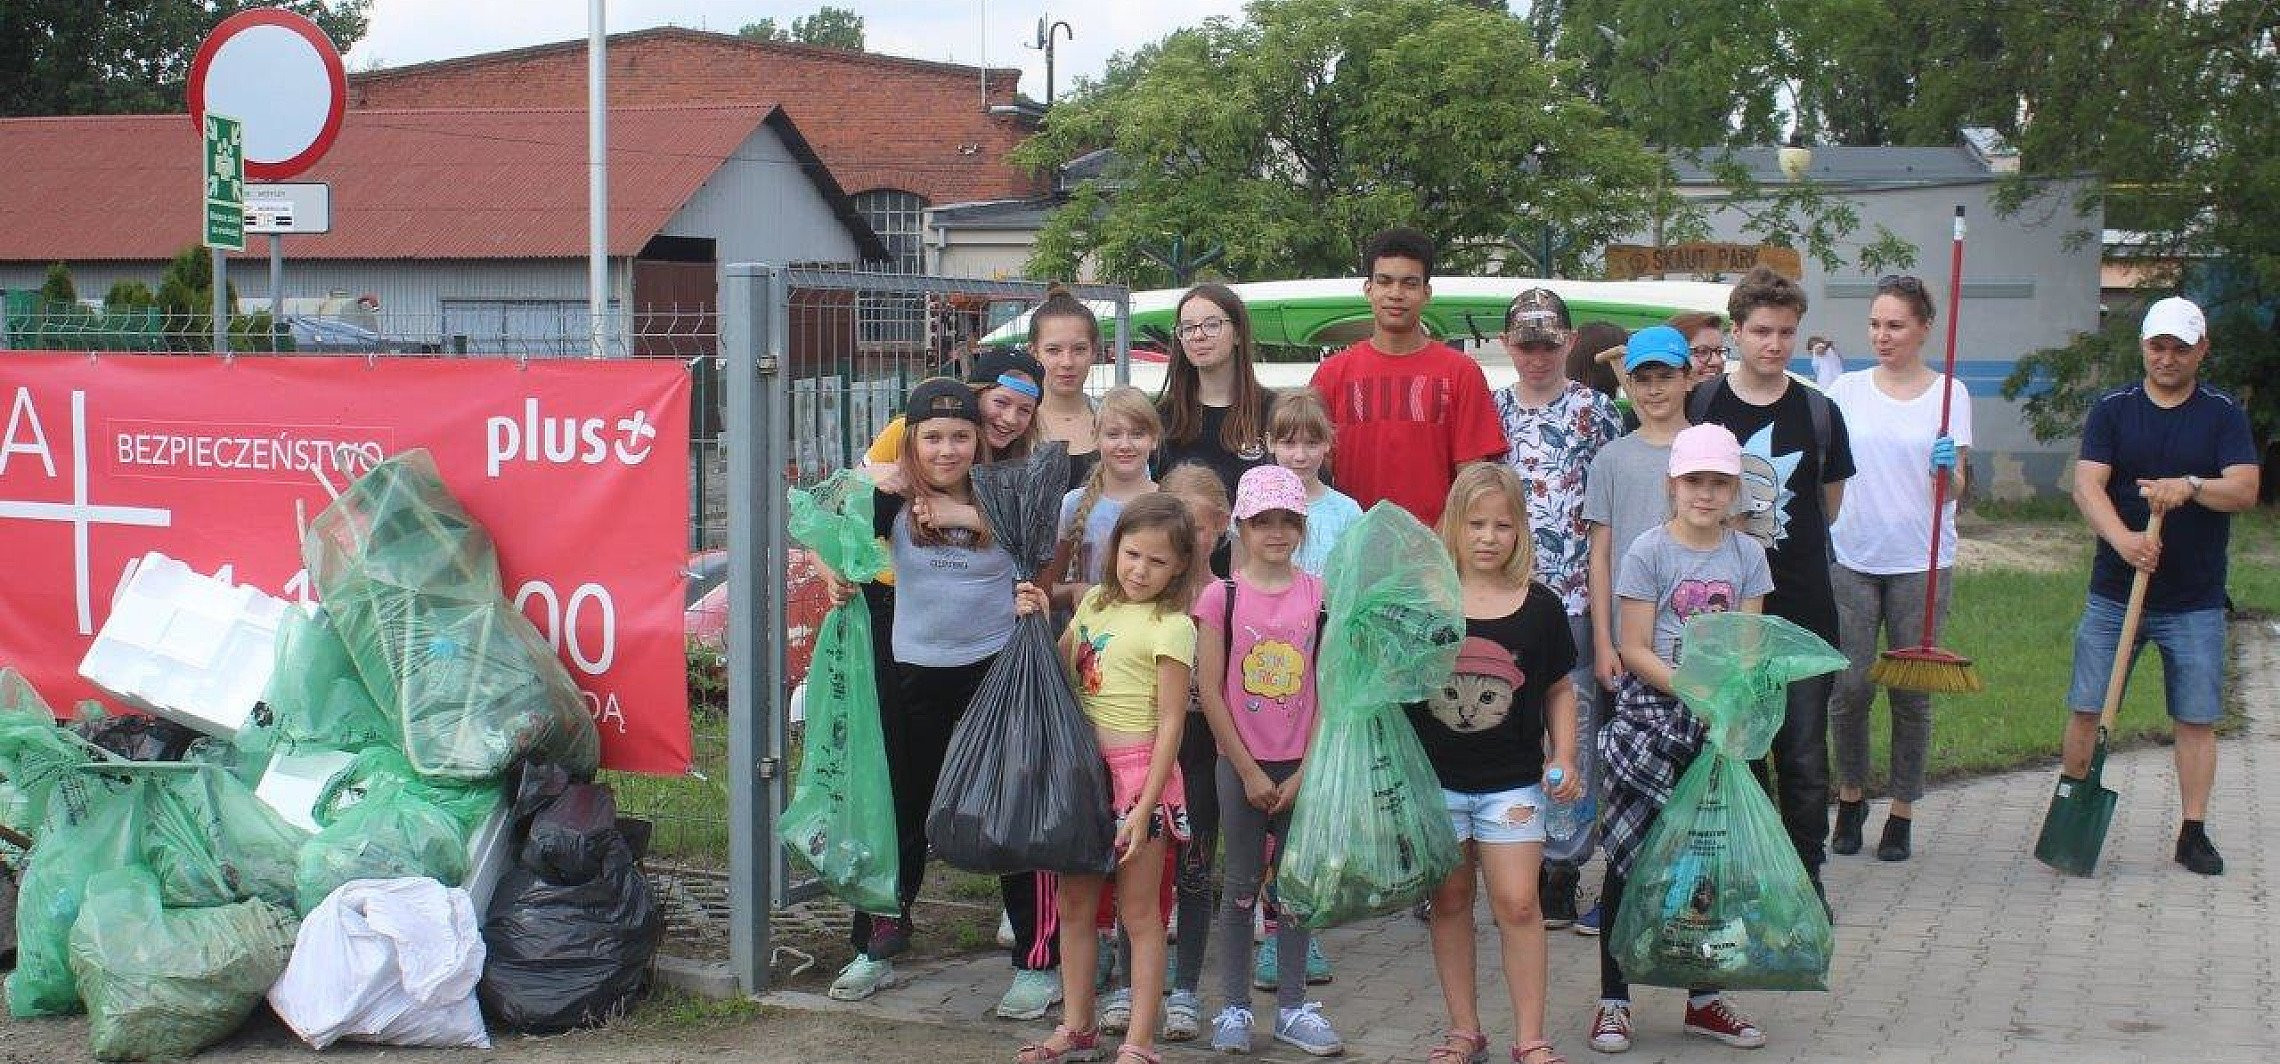 Inowrocław - Sprzątali rzekę Noteć, zebrali 26 worków śmieci